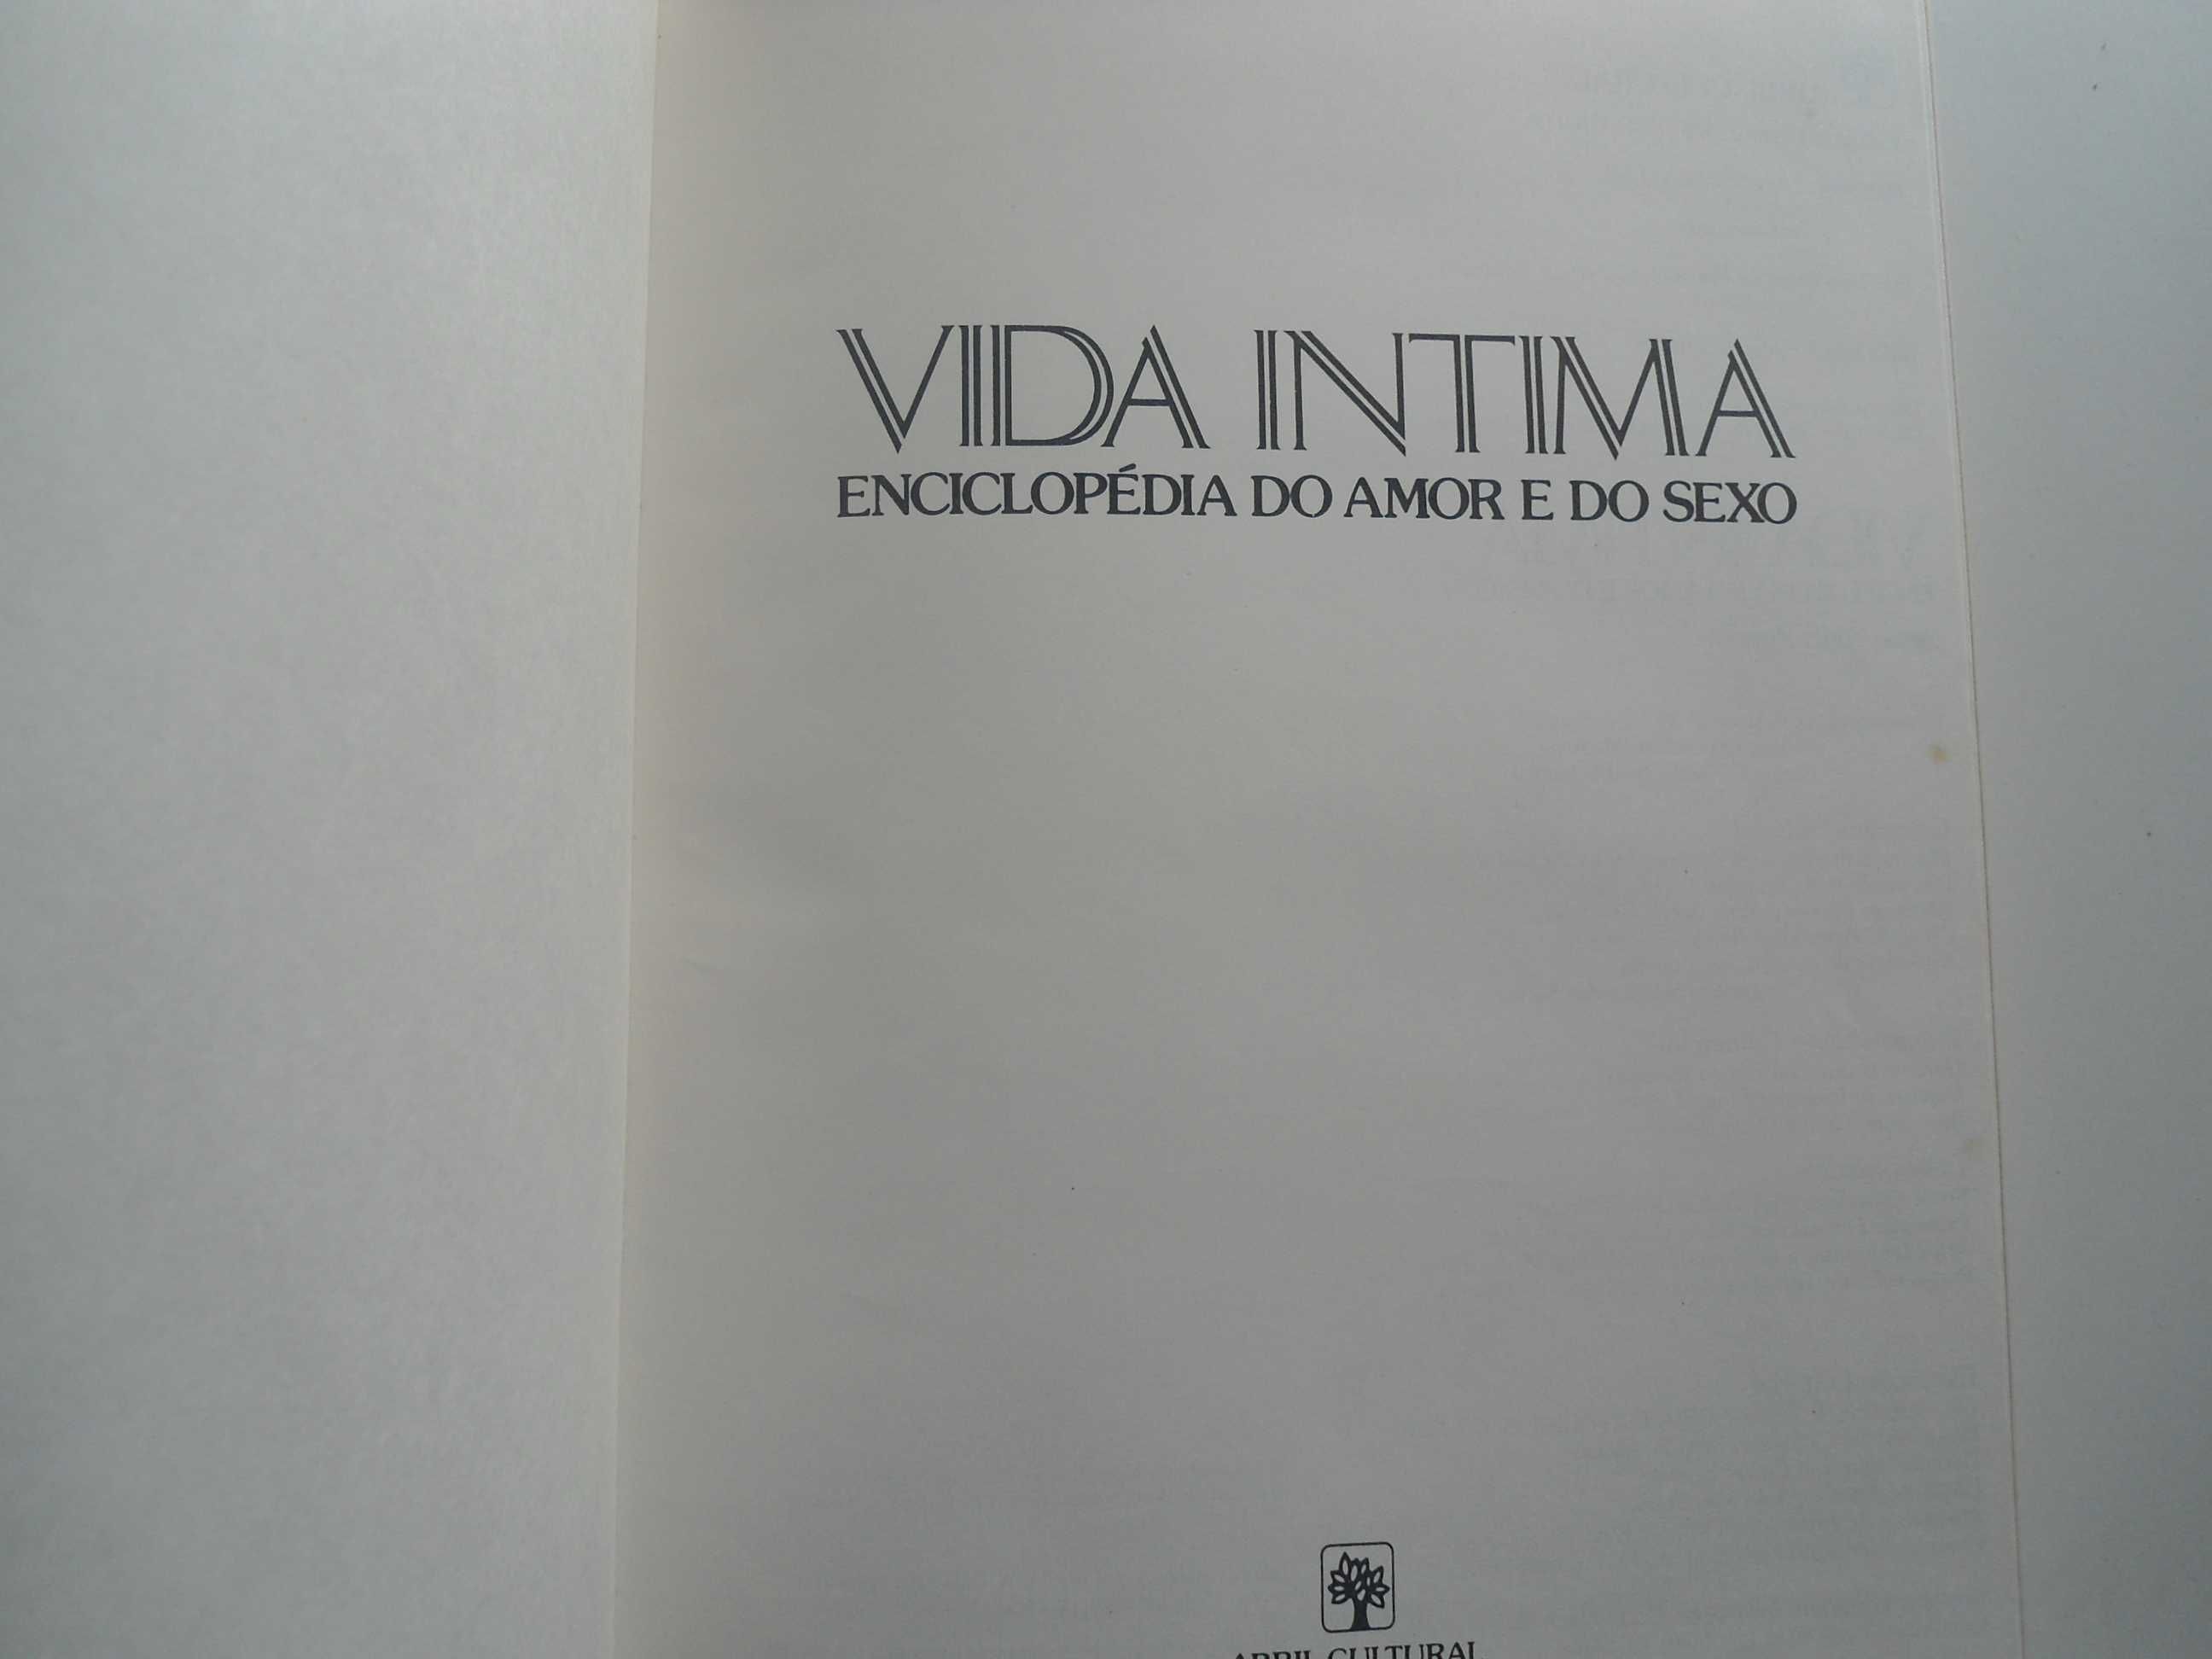 Vida Intima - Enciclopédia do amor e do sexo (1981)